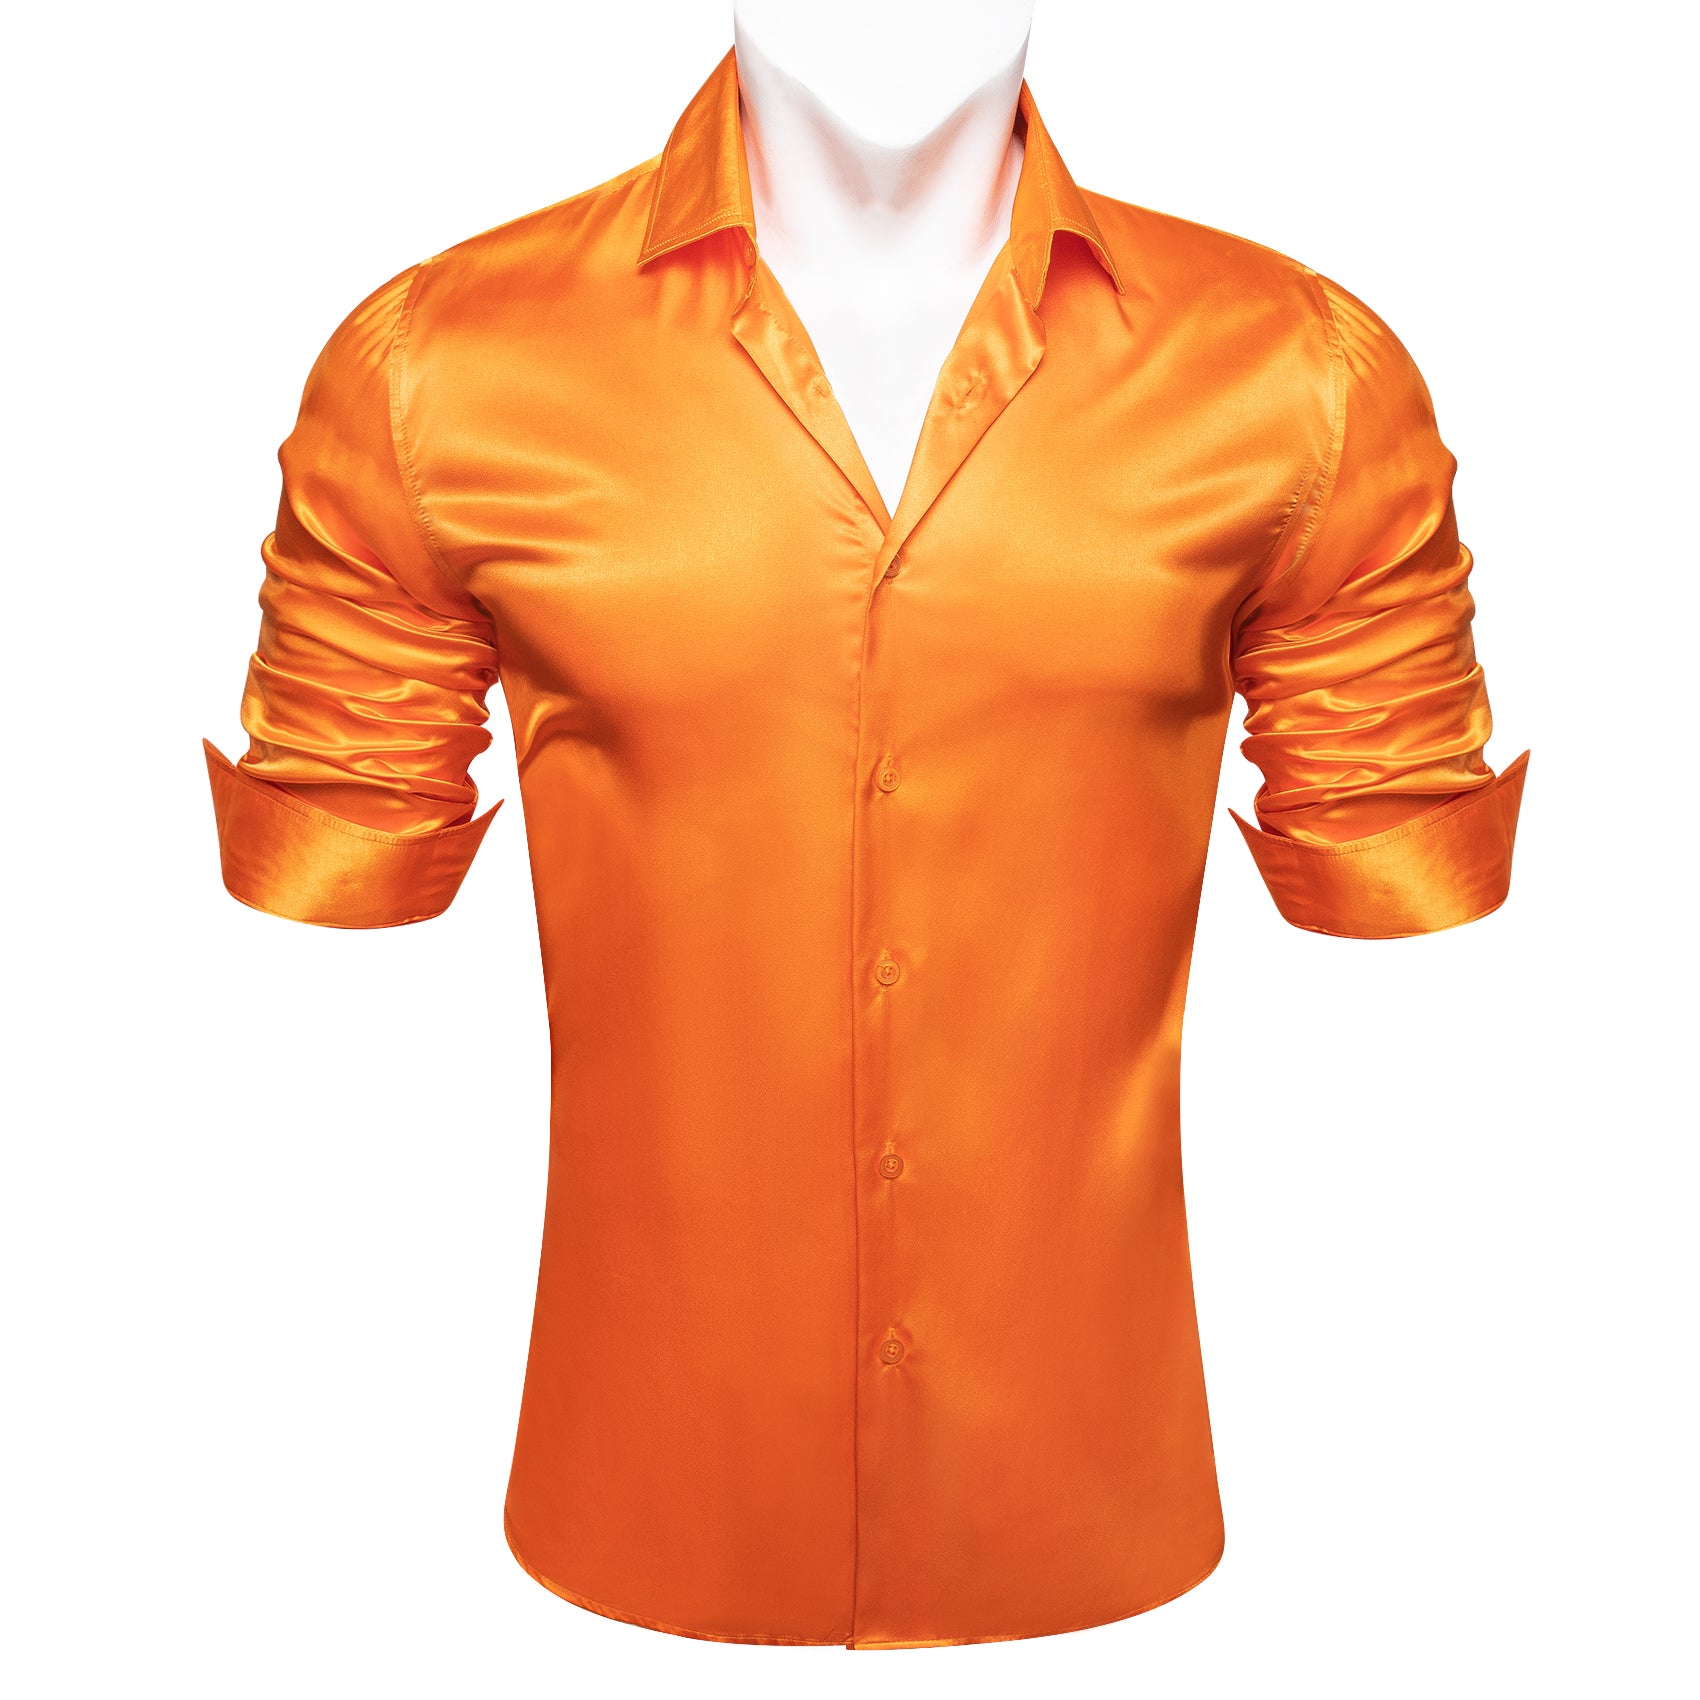 Barry.wang Button Down Shirt Men's Fashionable Orange Solid Silk Shirt